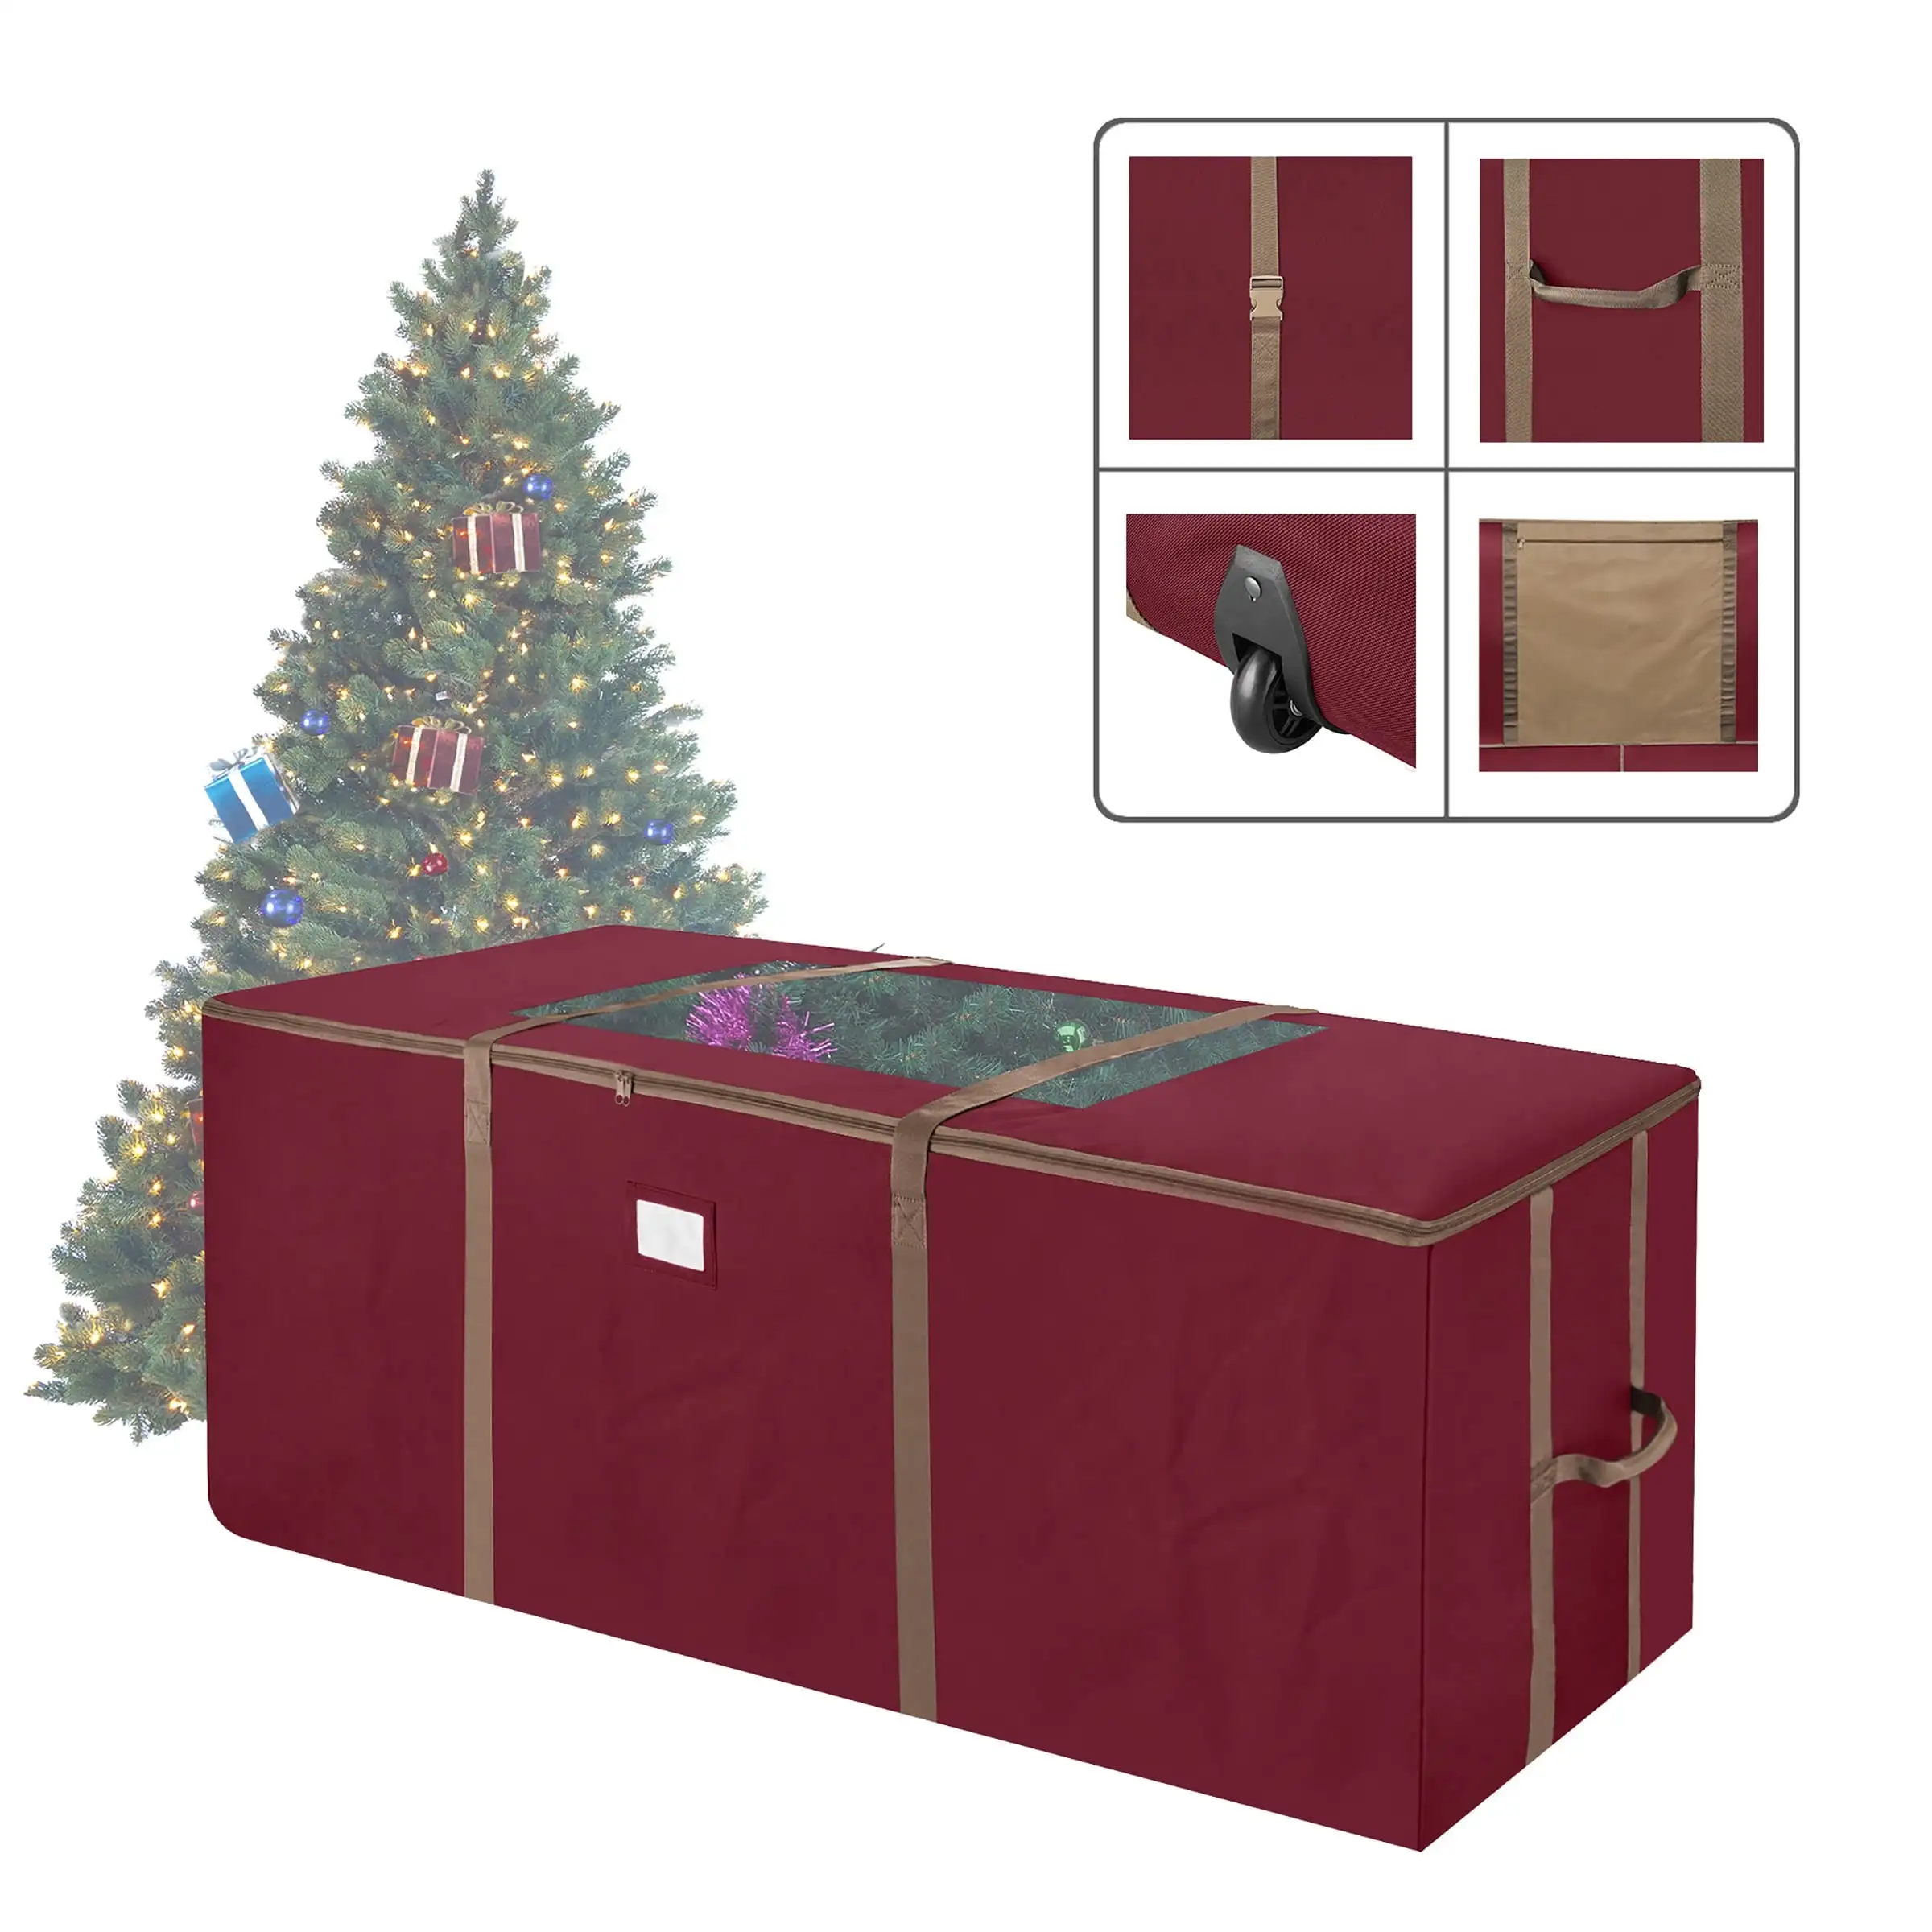 

Сумка для хранения рождественской елки Elf Stor, красная, на колесиках, с окошком для елки 9 футов, сверхпрочная Сумка На Колесиках с внутренней отделкой из ПВХ